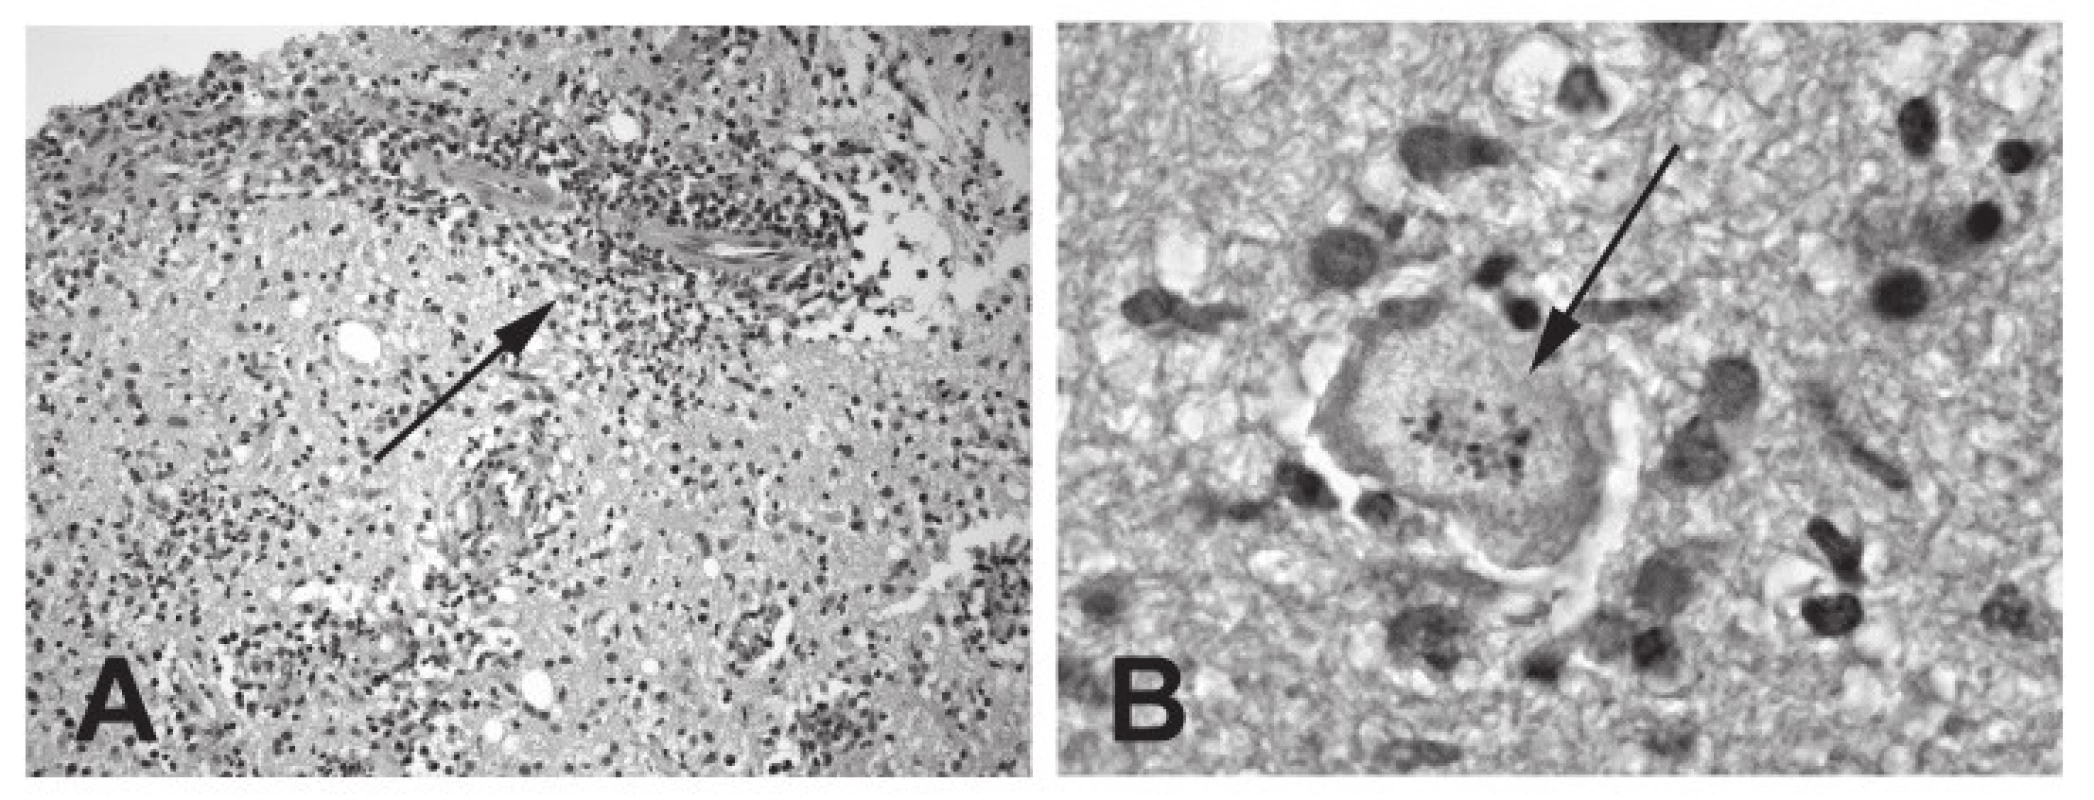 Histologický nález u mozkové toxoplazmózy (biopsie): A – perivaskulární infiltráty (označeno šipkou); B – toxoplazmová pseudocysta s intracelulárními koloniemi trofozoitů (označeno šipkou).